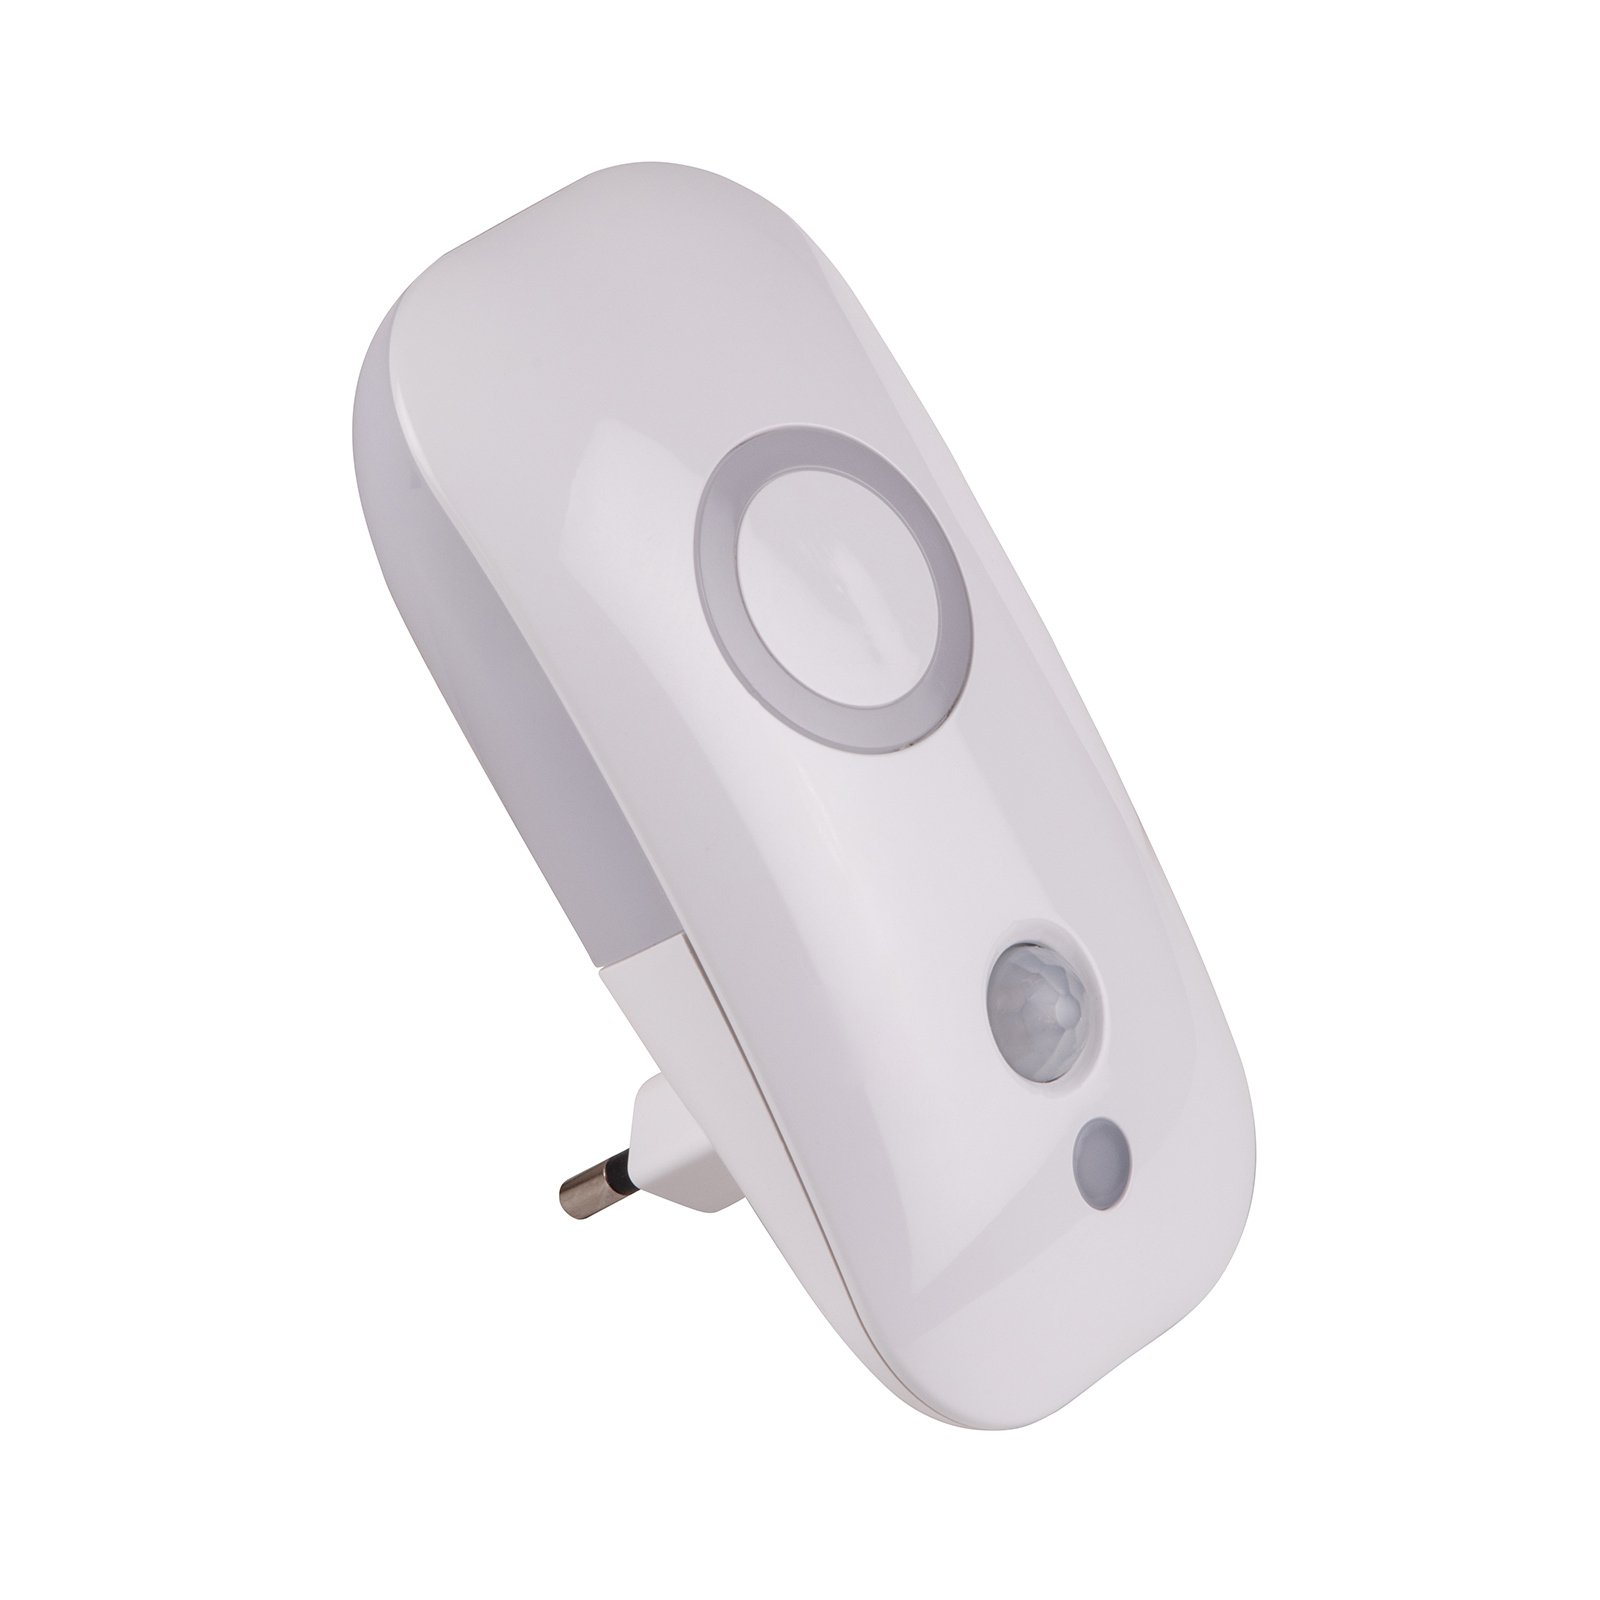 ontwikkeling voeden Klooster Dora - LED nachtlampje voor stopcontact m sensor | Lampen24.be